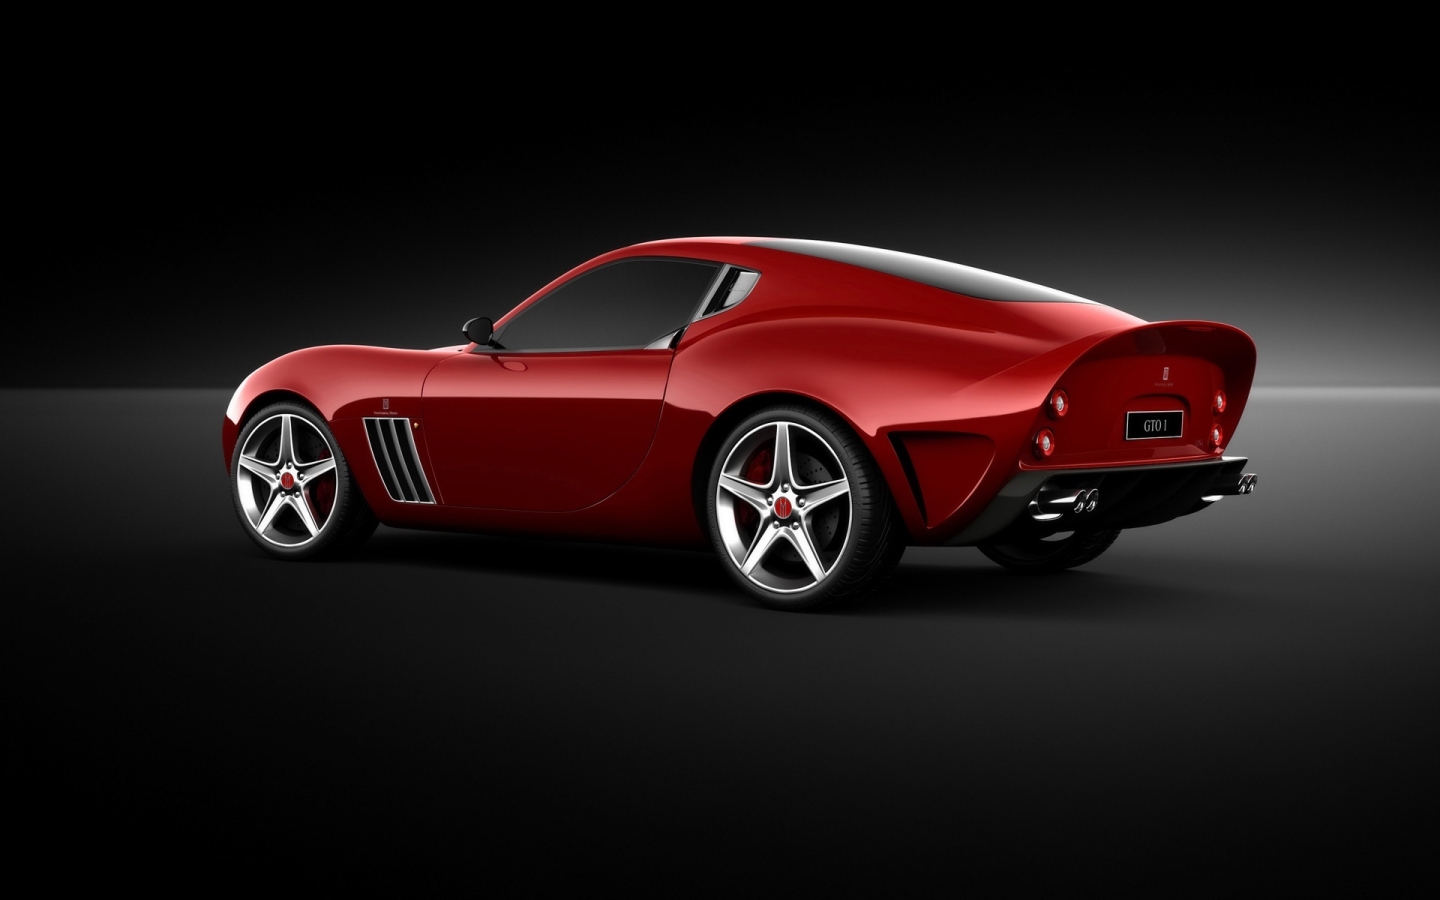 Ferrari Vandenbrink 599 GTO 2009 for 1440 x 900 widescreen resolution